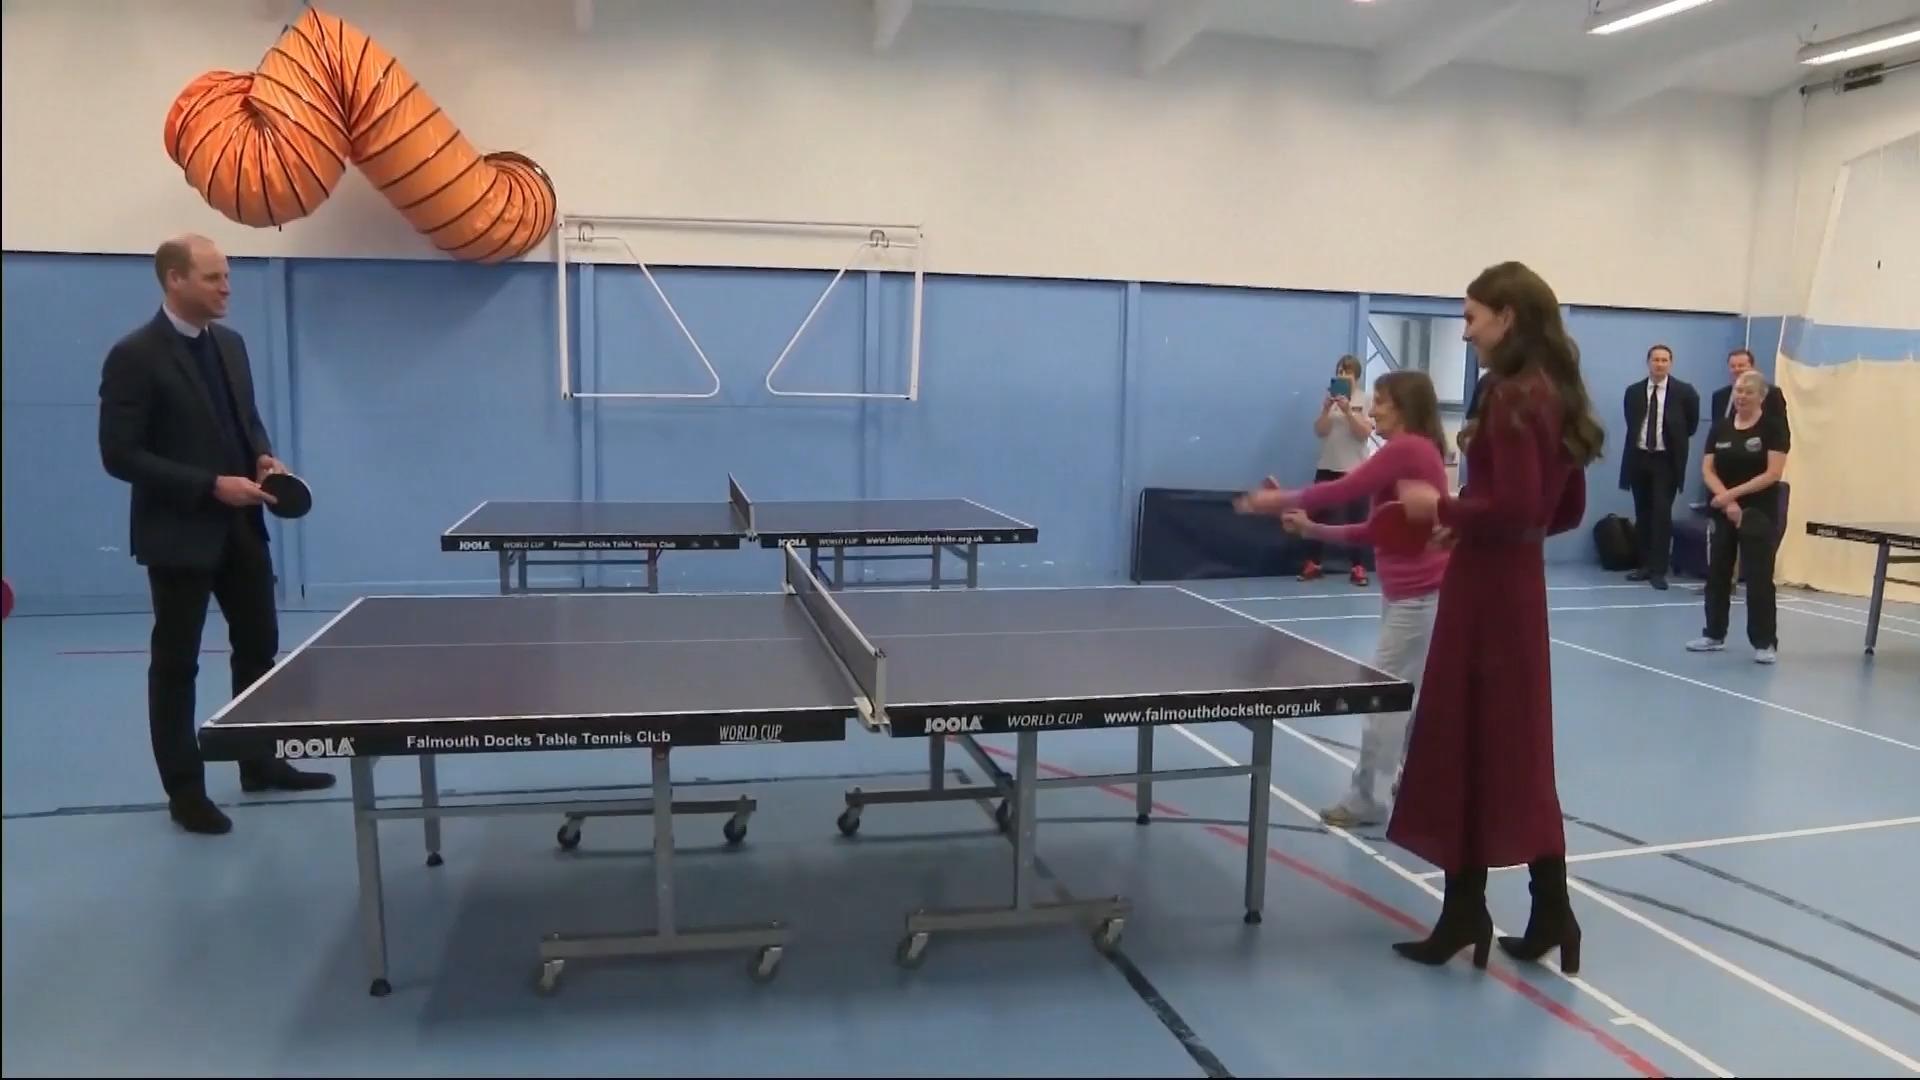 Duelo de tenis de mesa entre la princesa Kate y el príncipe William Royal